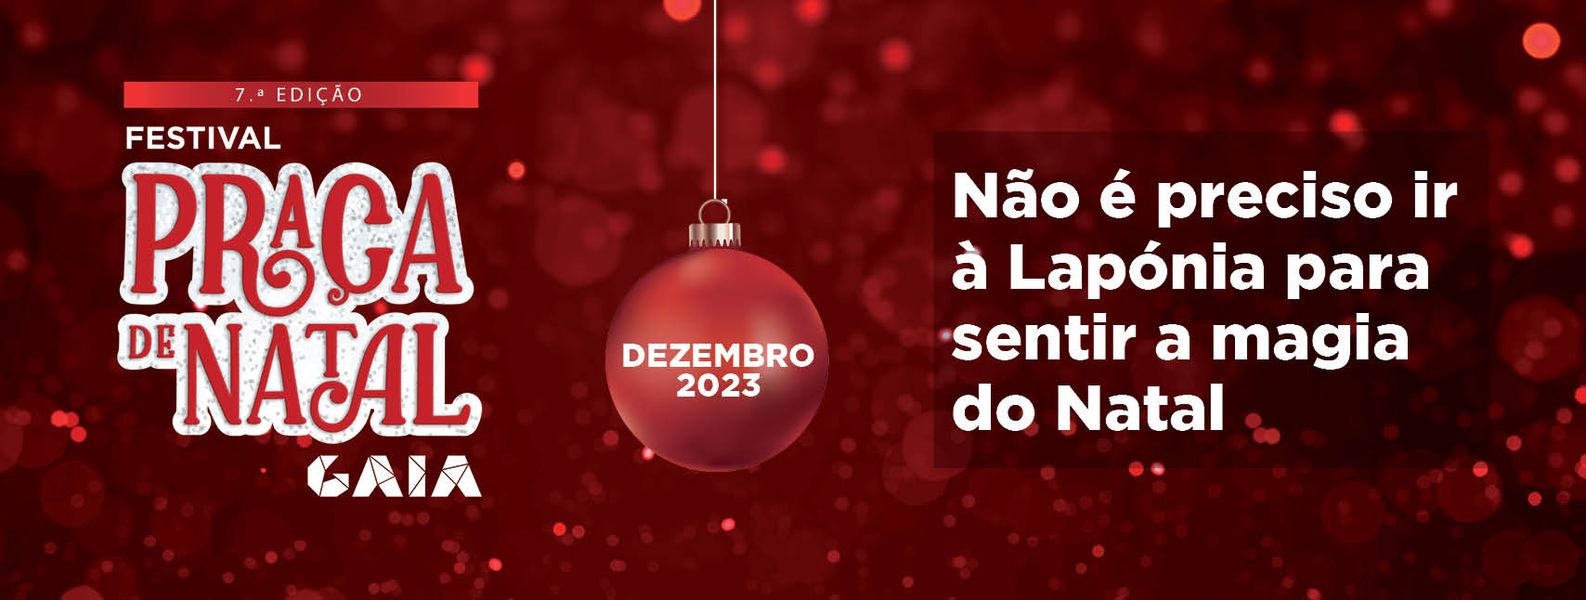 Praça de Natal 2023- Vila Nova de Gaia